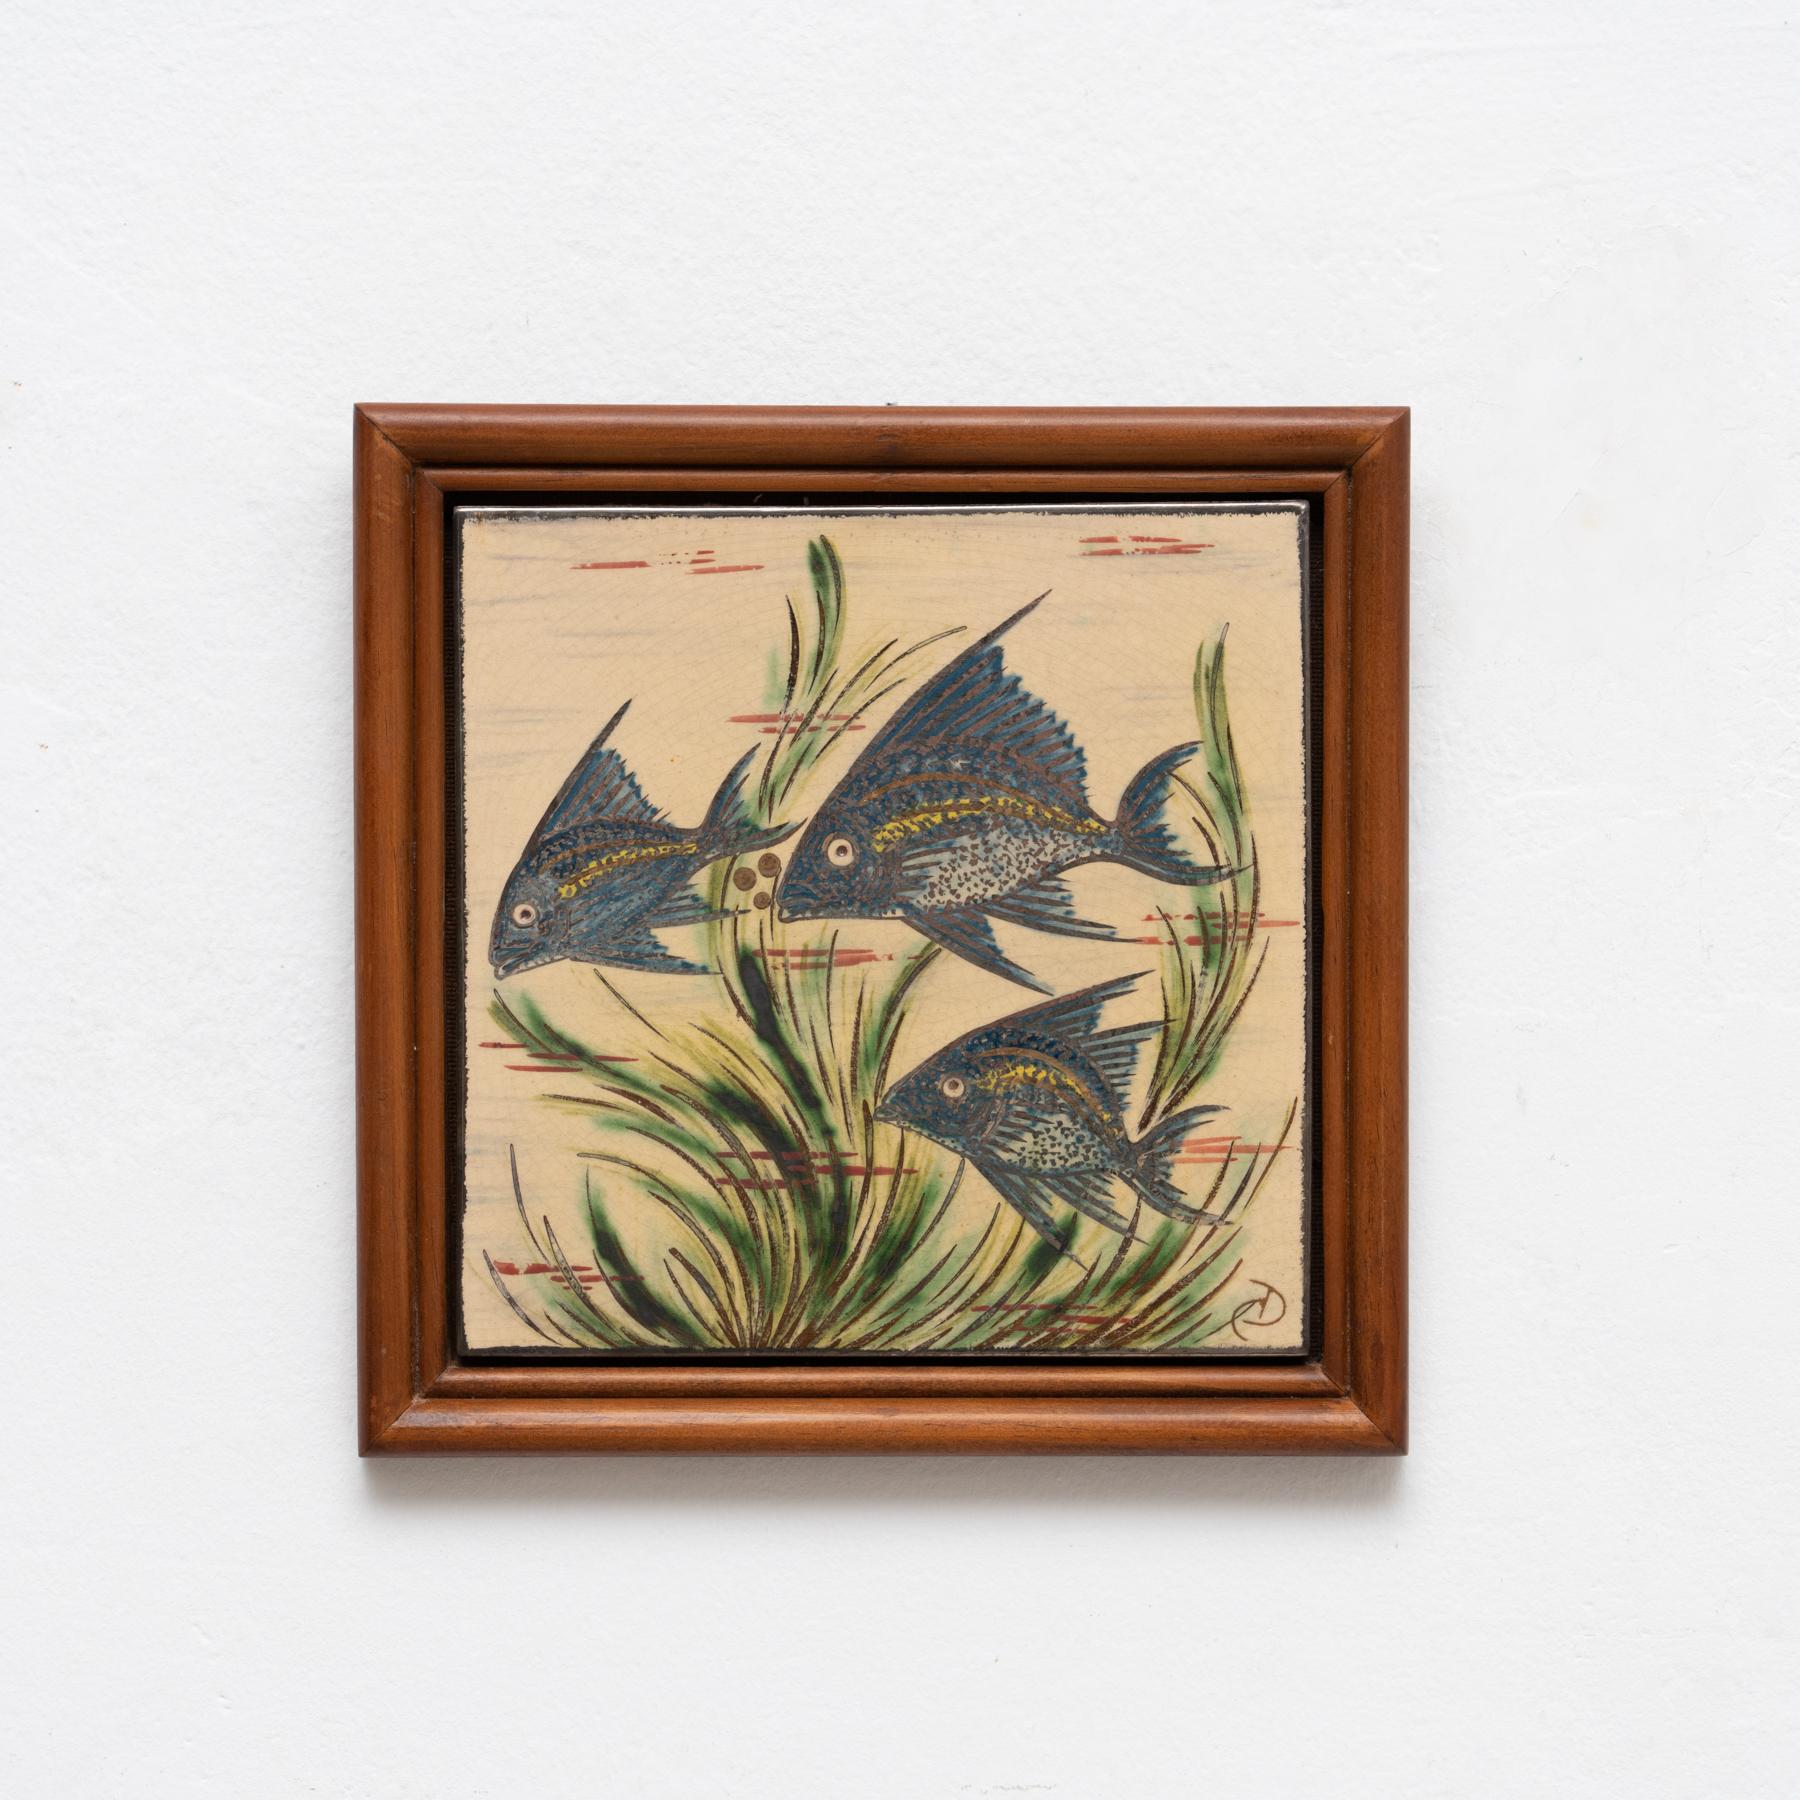 Œuvre d'art en céramique peinte à la main représentant un poisson par l'artiste catalan Diaz Costa, vers 1960.
Encadré. Signé.

En état d'origine, avec une usure mineure correspondant à l'âge et à l'utilisation, préservant une belle patine.